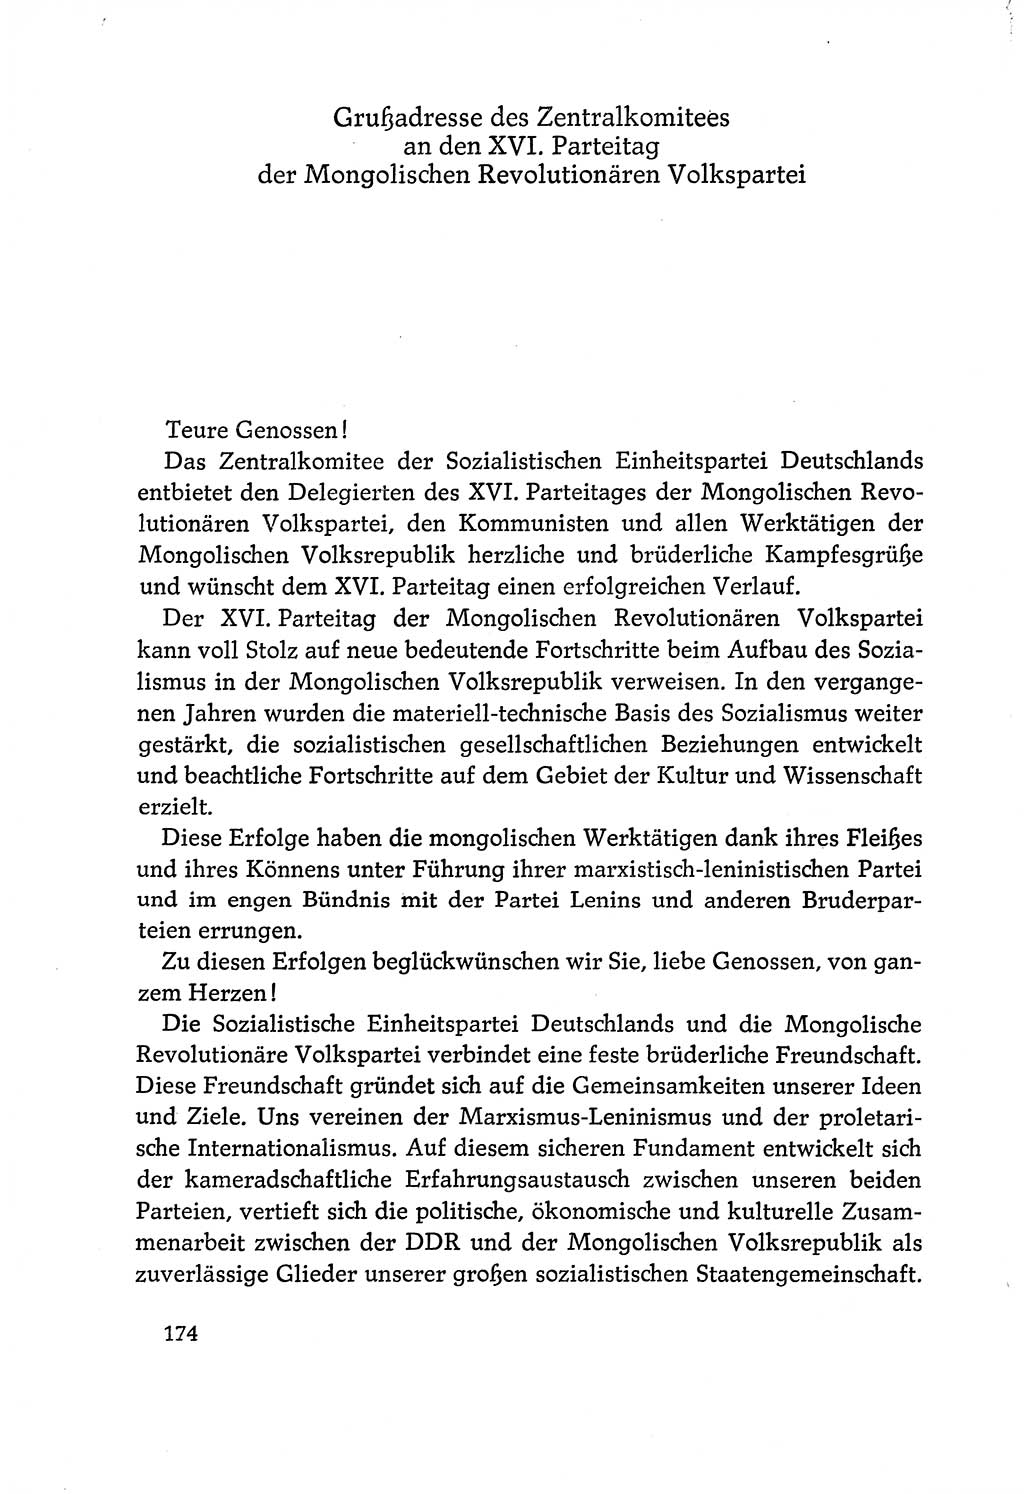 Dokumente der Sozialistischen Einheitspartei Deutschlands (SED) [Deutsche Demokratische Republik (DDR)] 1970-1971, Seite 174 (Dok. SED DDR 1970-1971, S. 174)